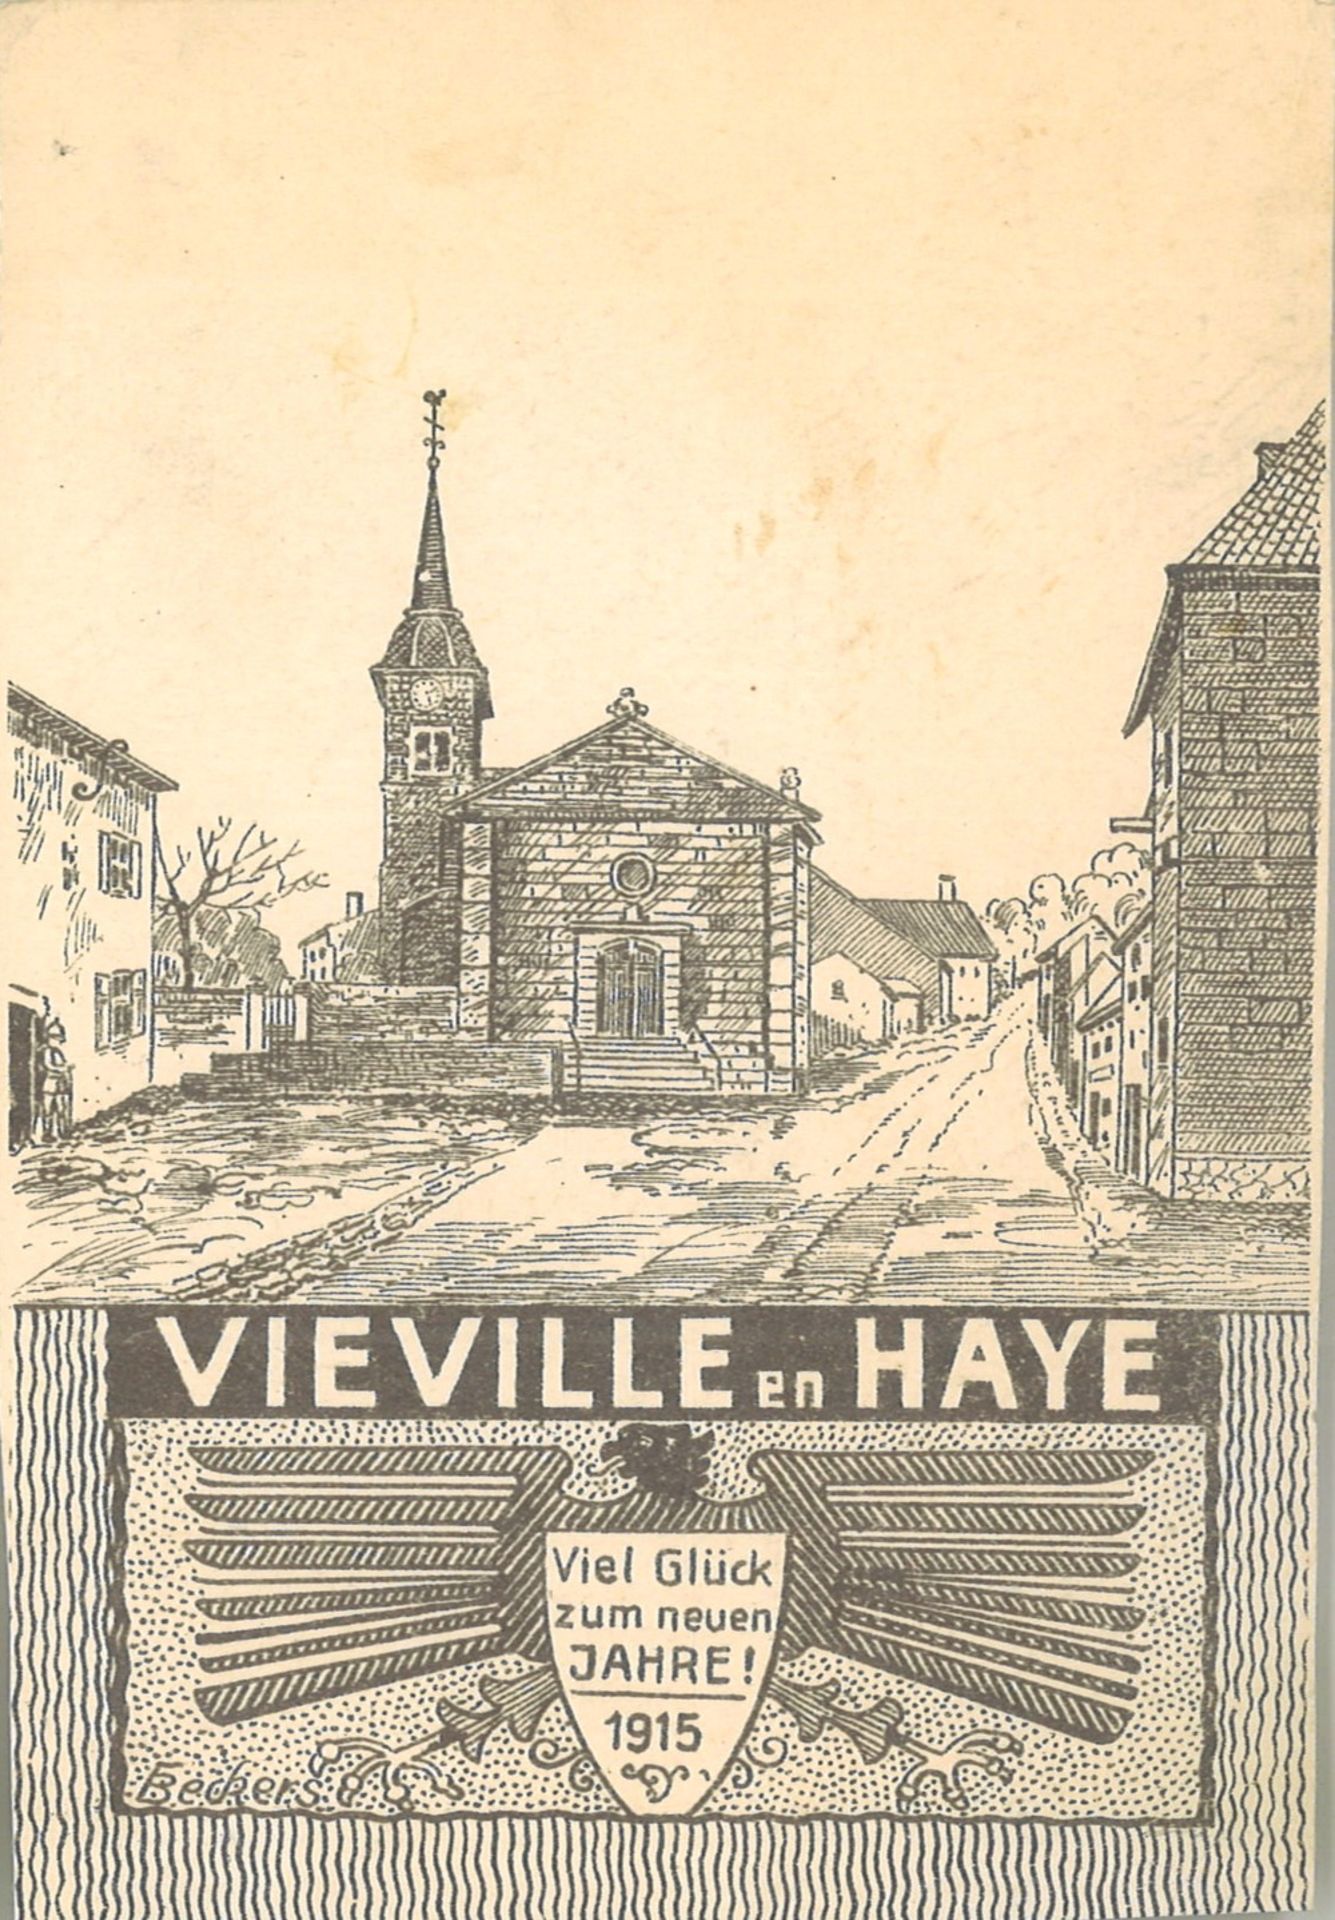 Feldpostkarte "Vieville en Haye" Viel Glück zum neuen Jahr 1915, gelaufen